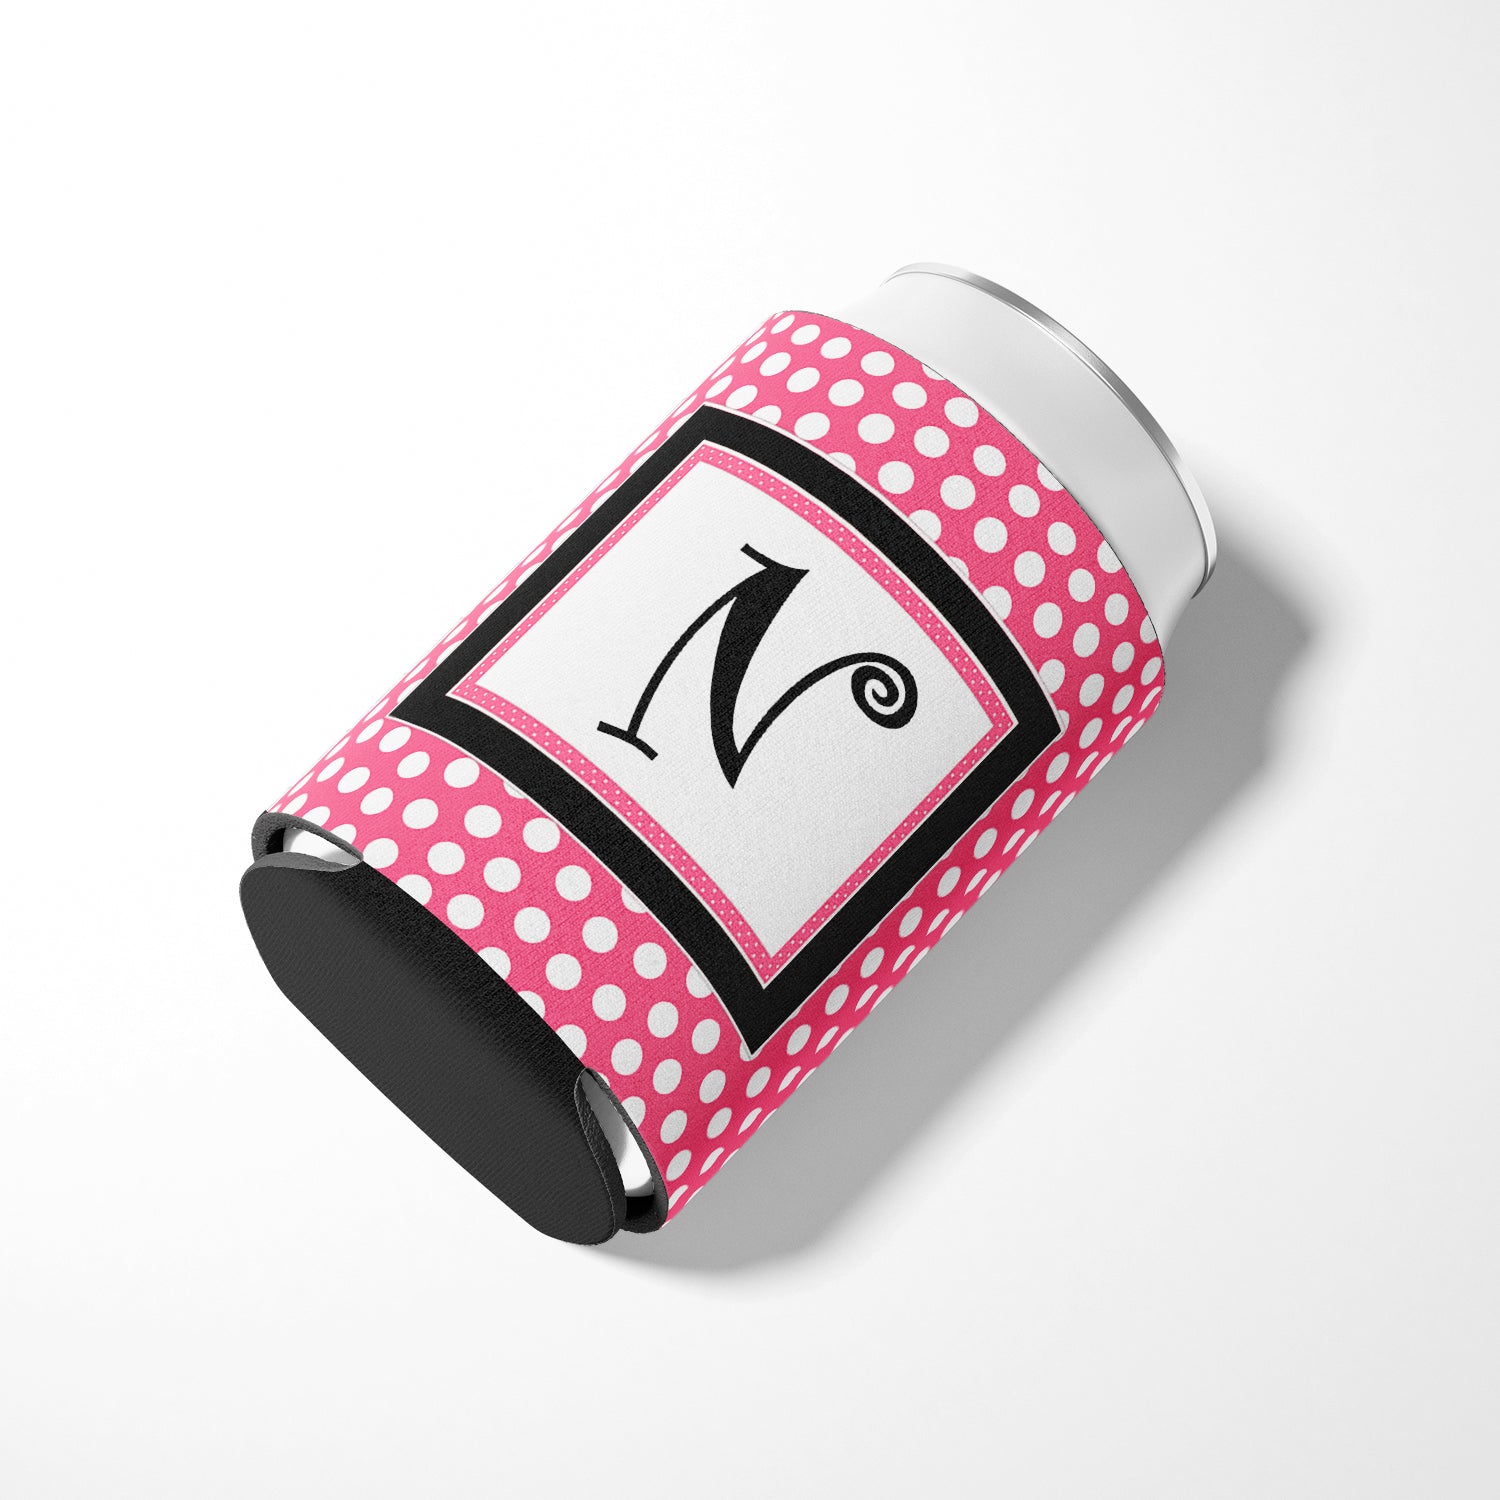 Letter N Initial Monogram - Pink Black Polka Dots Can or Bottle Beverage Insulator Hugger.